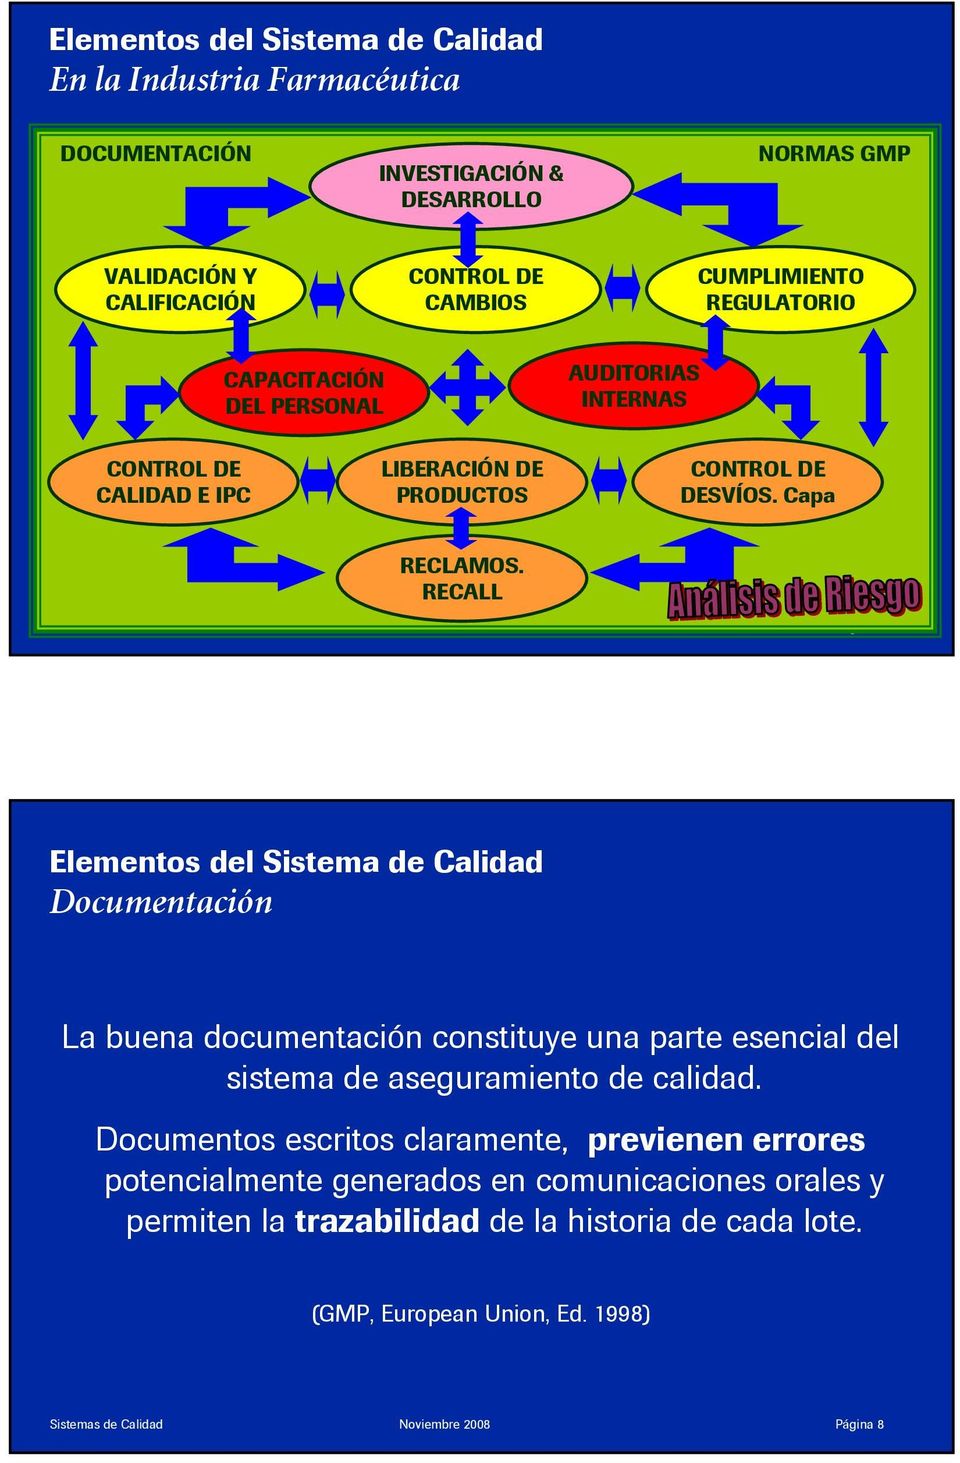 RECALL Sistemas de Calidad Noviembre 2008 Página 7 Elementos del Sistema de Calidad Documentación La buena documentación constituye una parte esencial del sistema de aseguramiento de